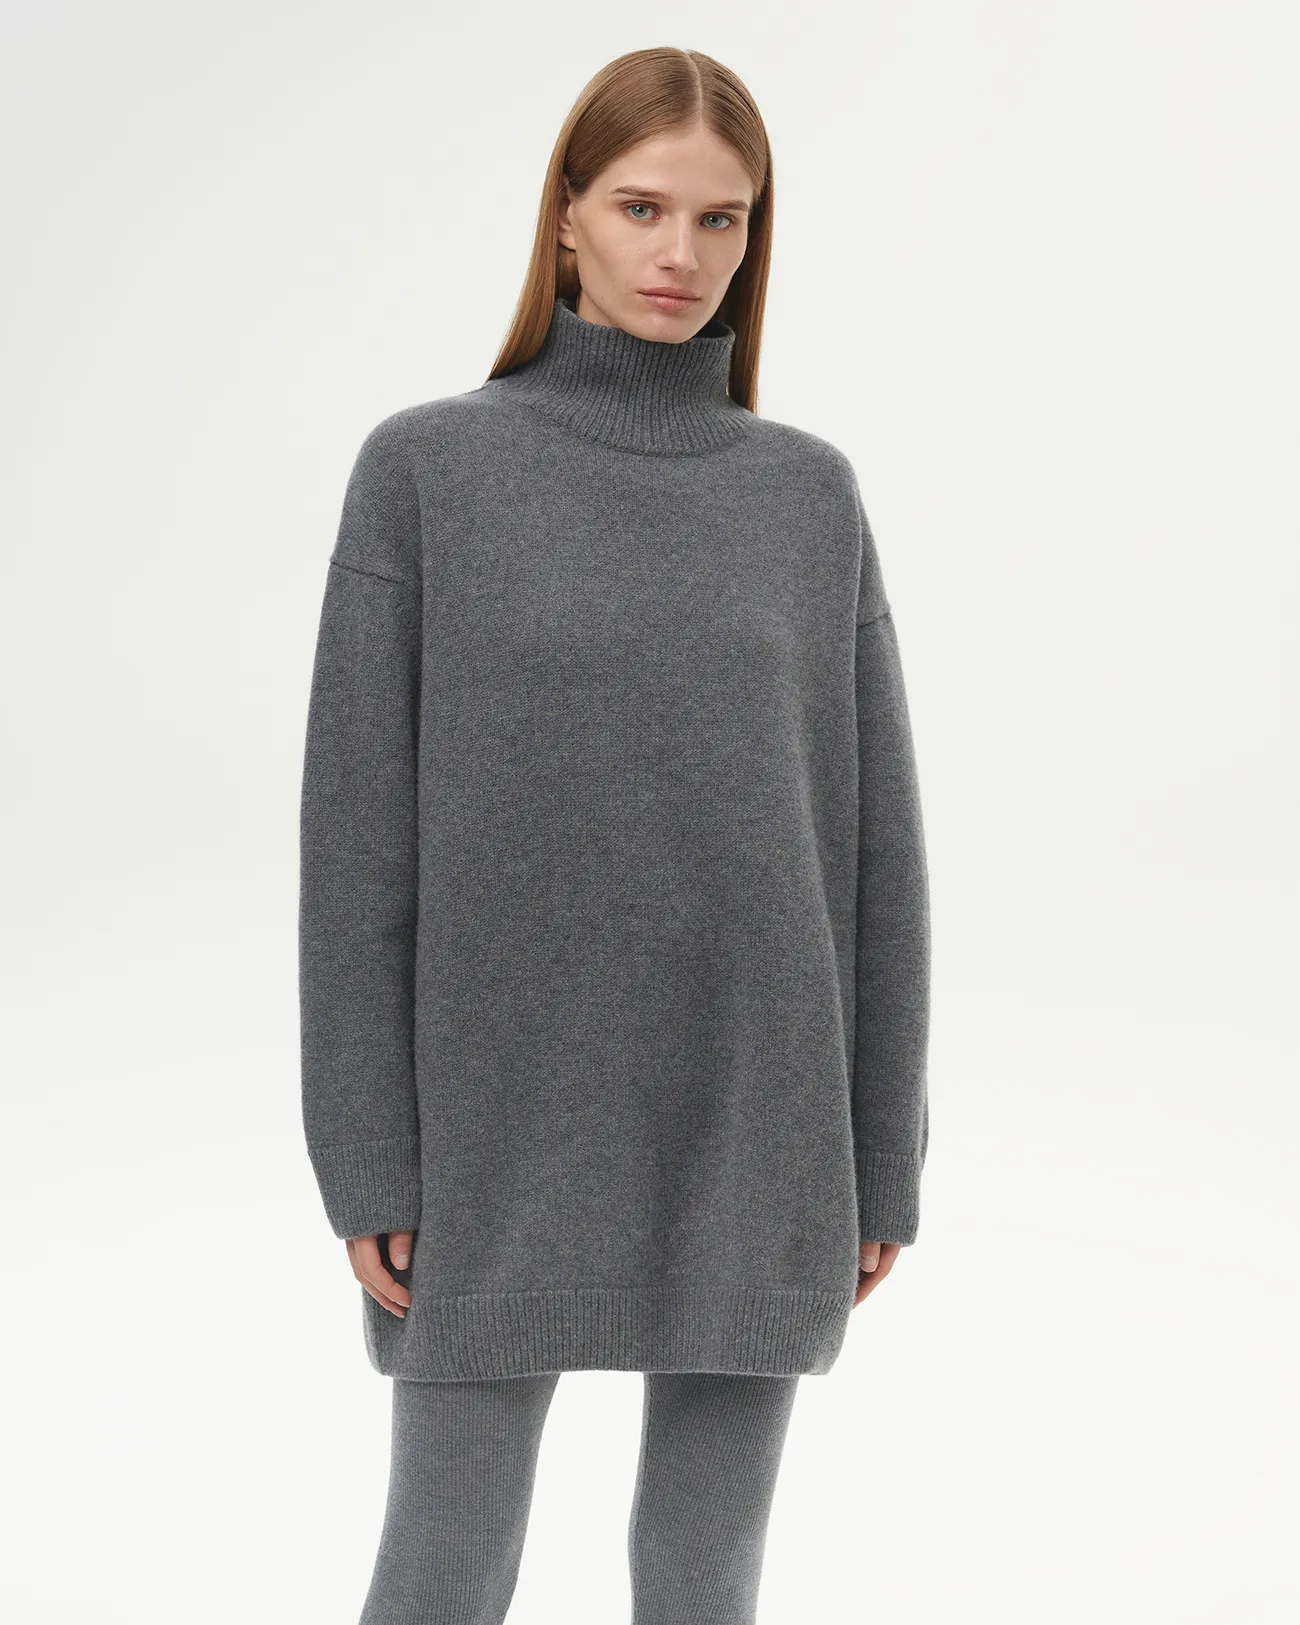 Платье-свитер мини серого цвета